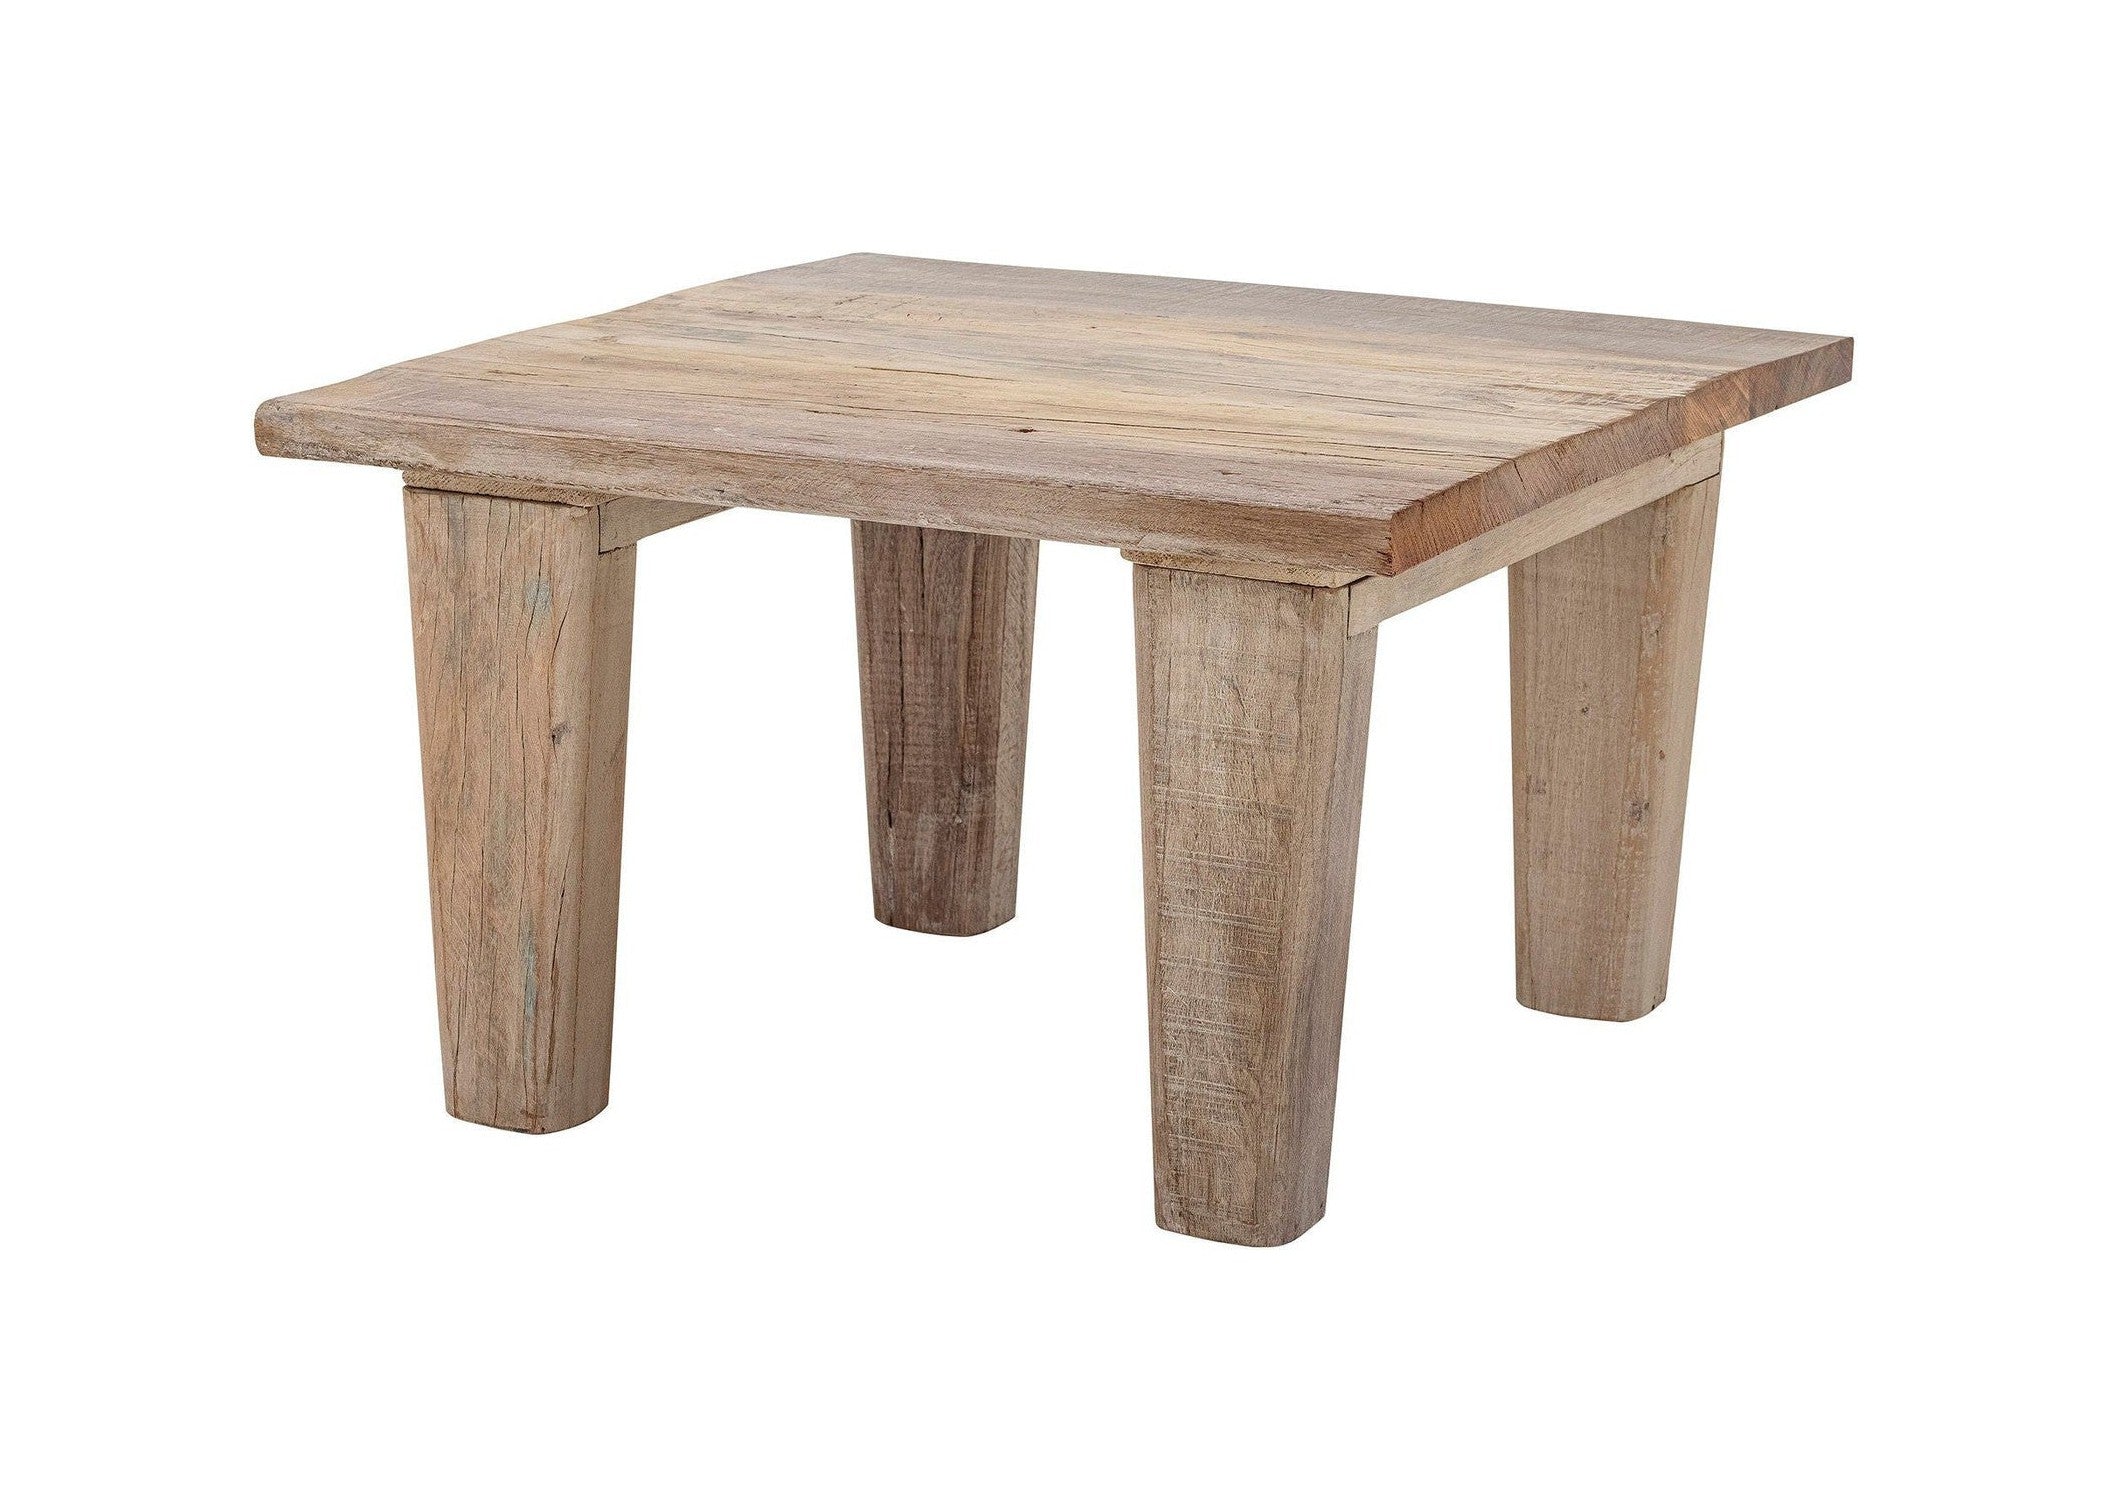 Table basse Bloomingville Riber, nature, bois récupéré